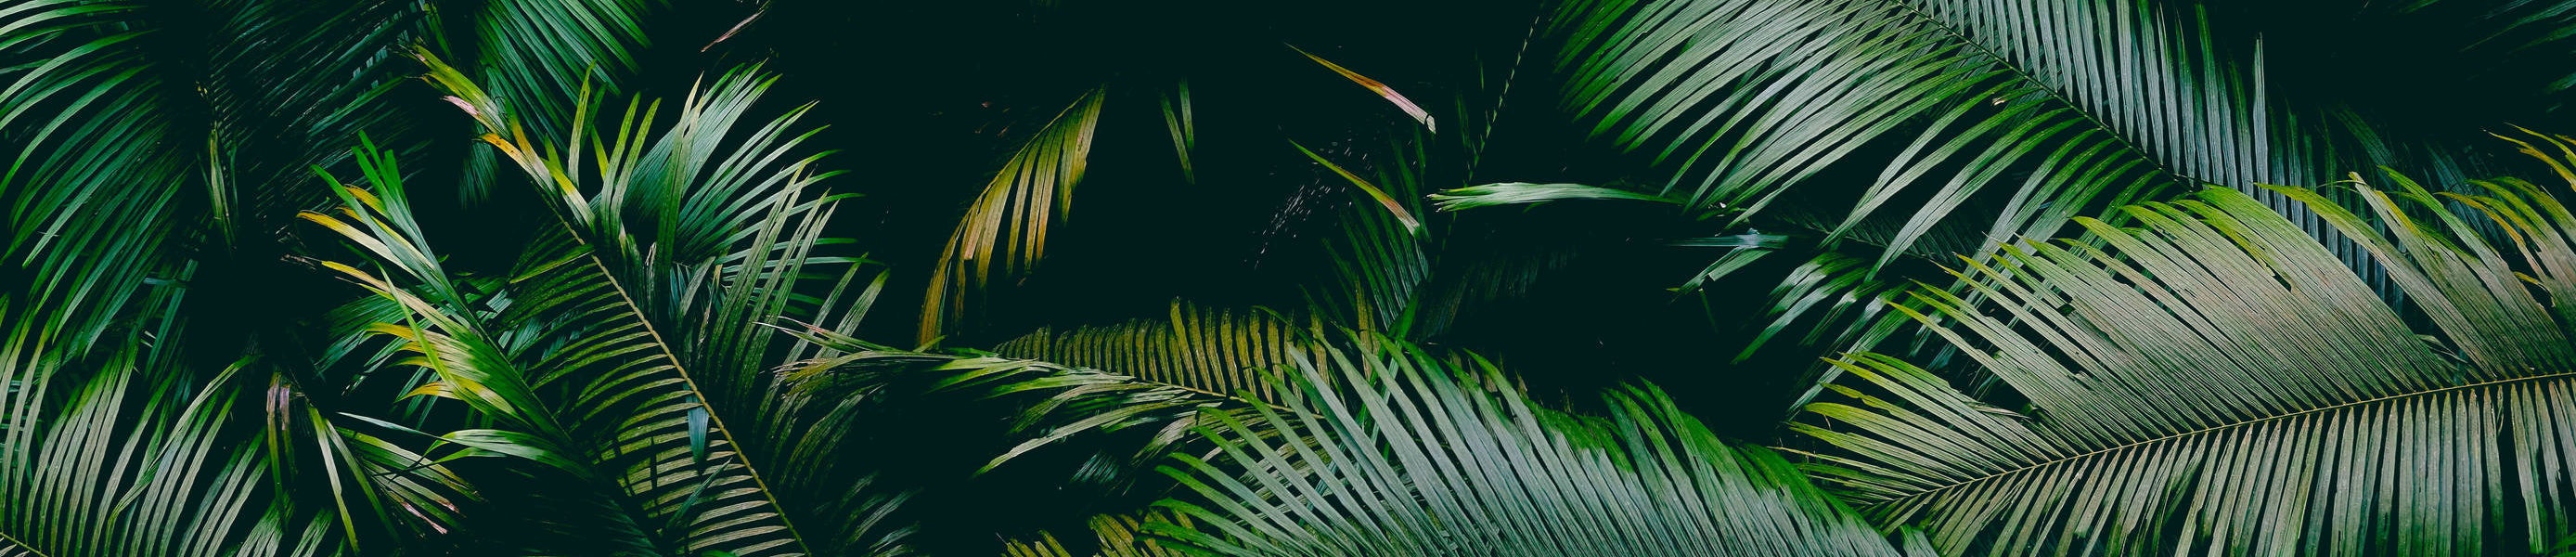 leaf background photo